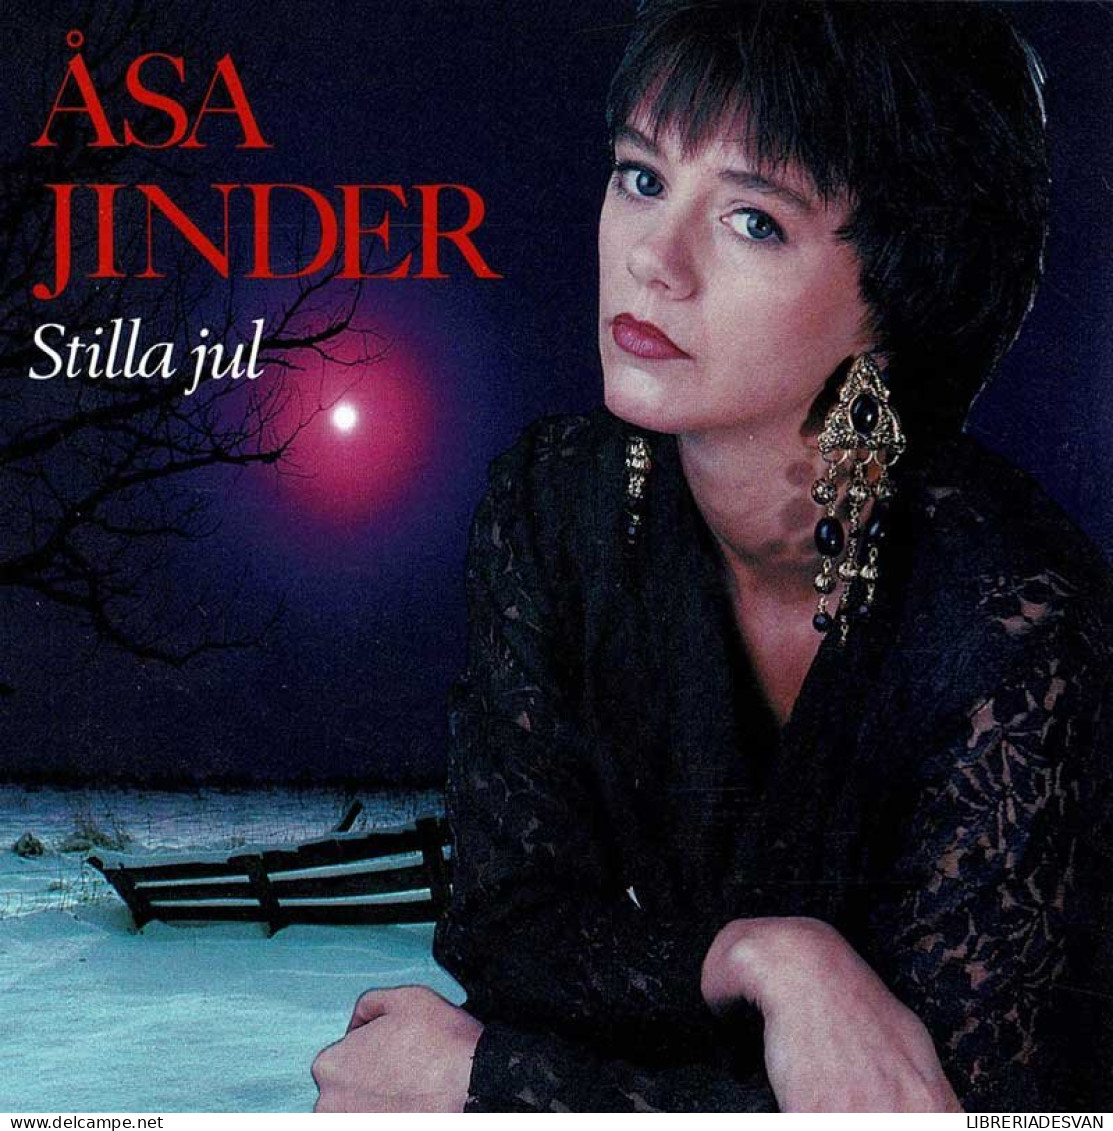 Åsa Jinder - Stilla Jul. CD - Country & Folk